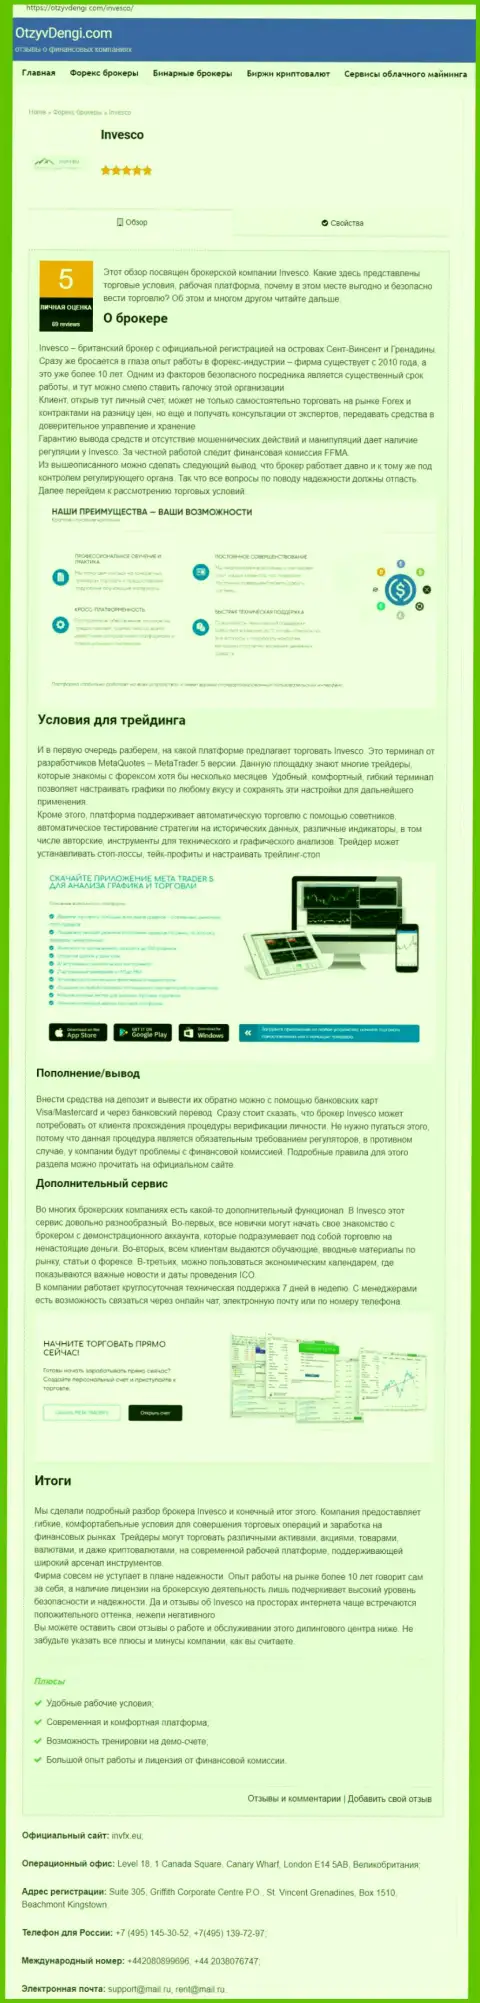 Сайт OtzyvDengi Com предоставил материал о форекс организации INVFX Eu